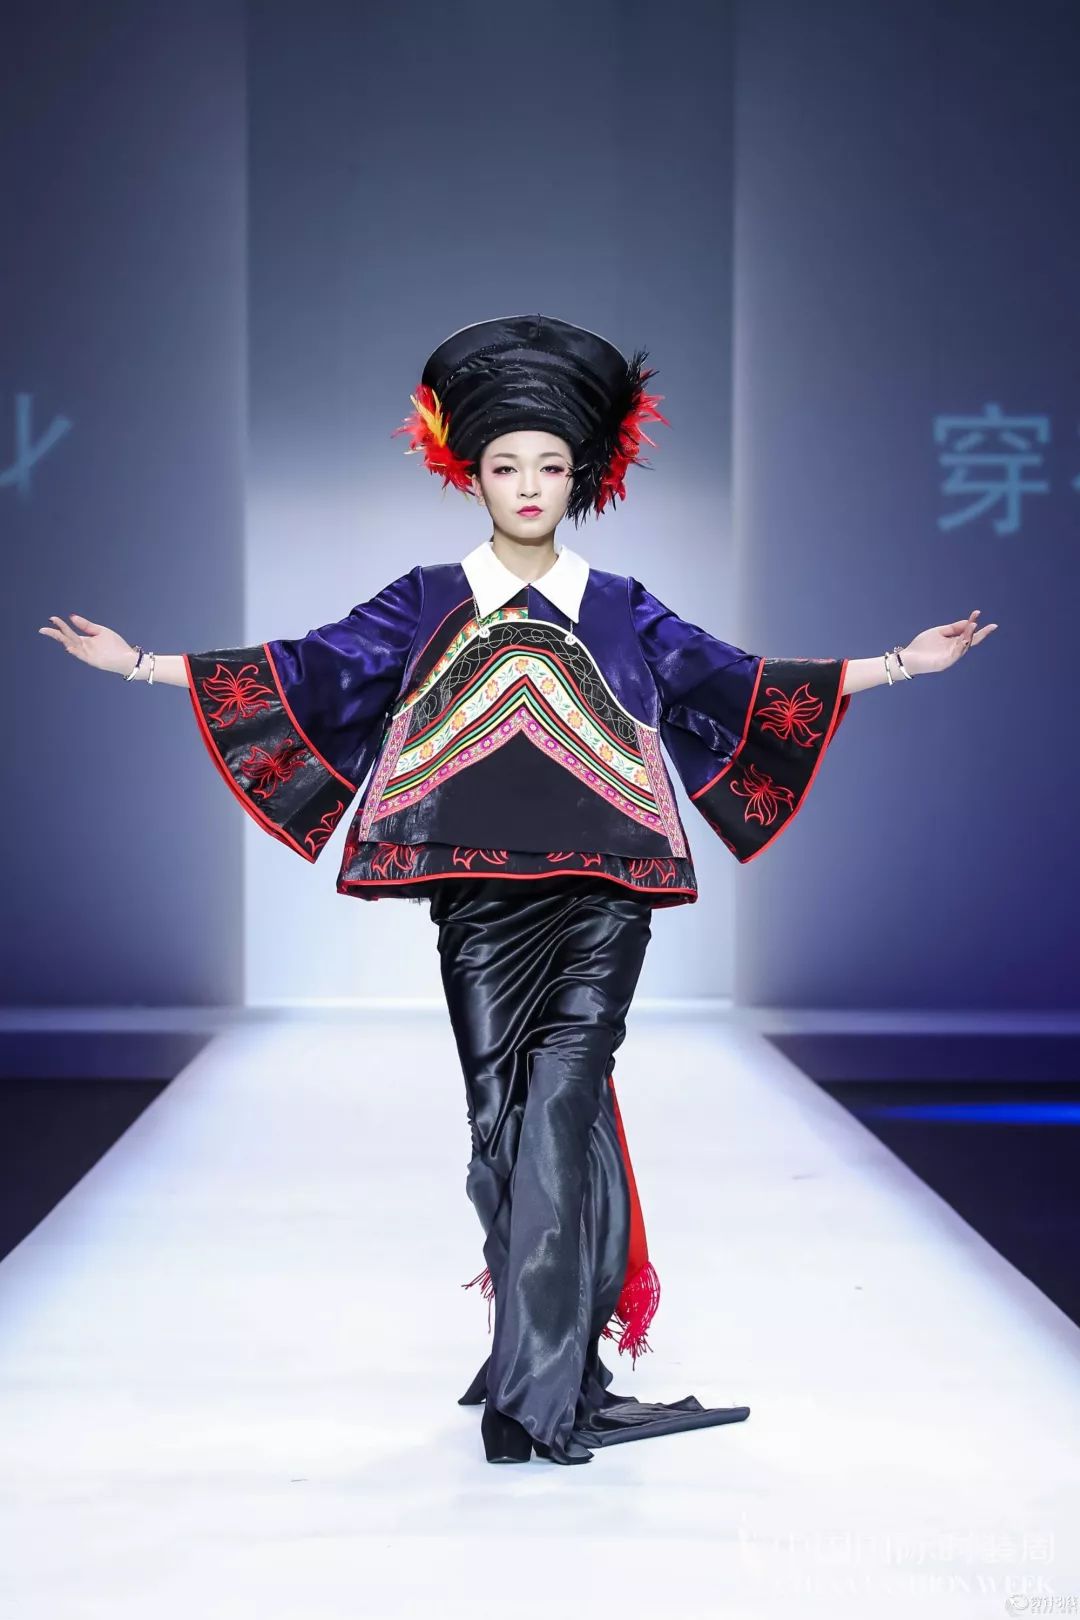 苗族服装设计师张珂嘉的传奇,国内众多品牌效仿的标杆